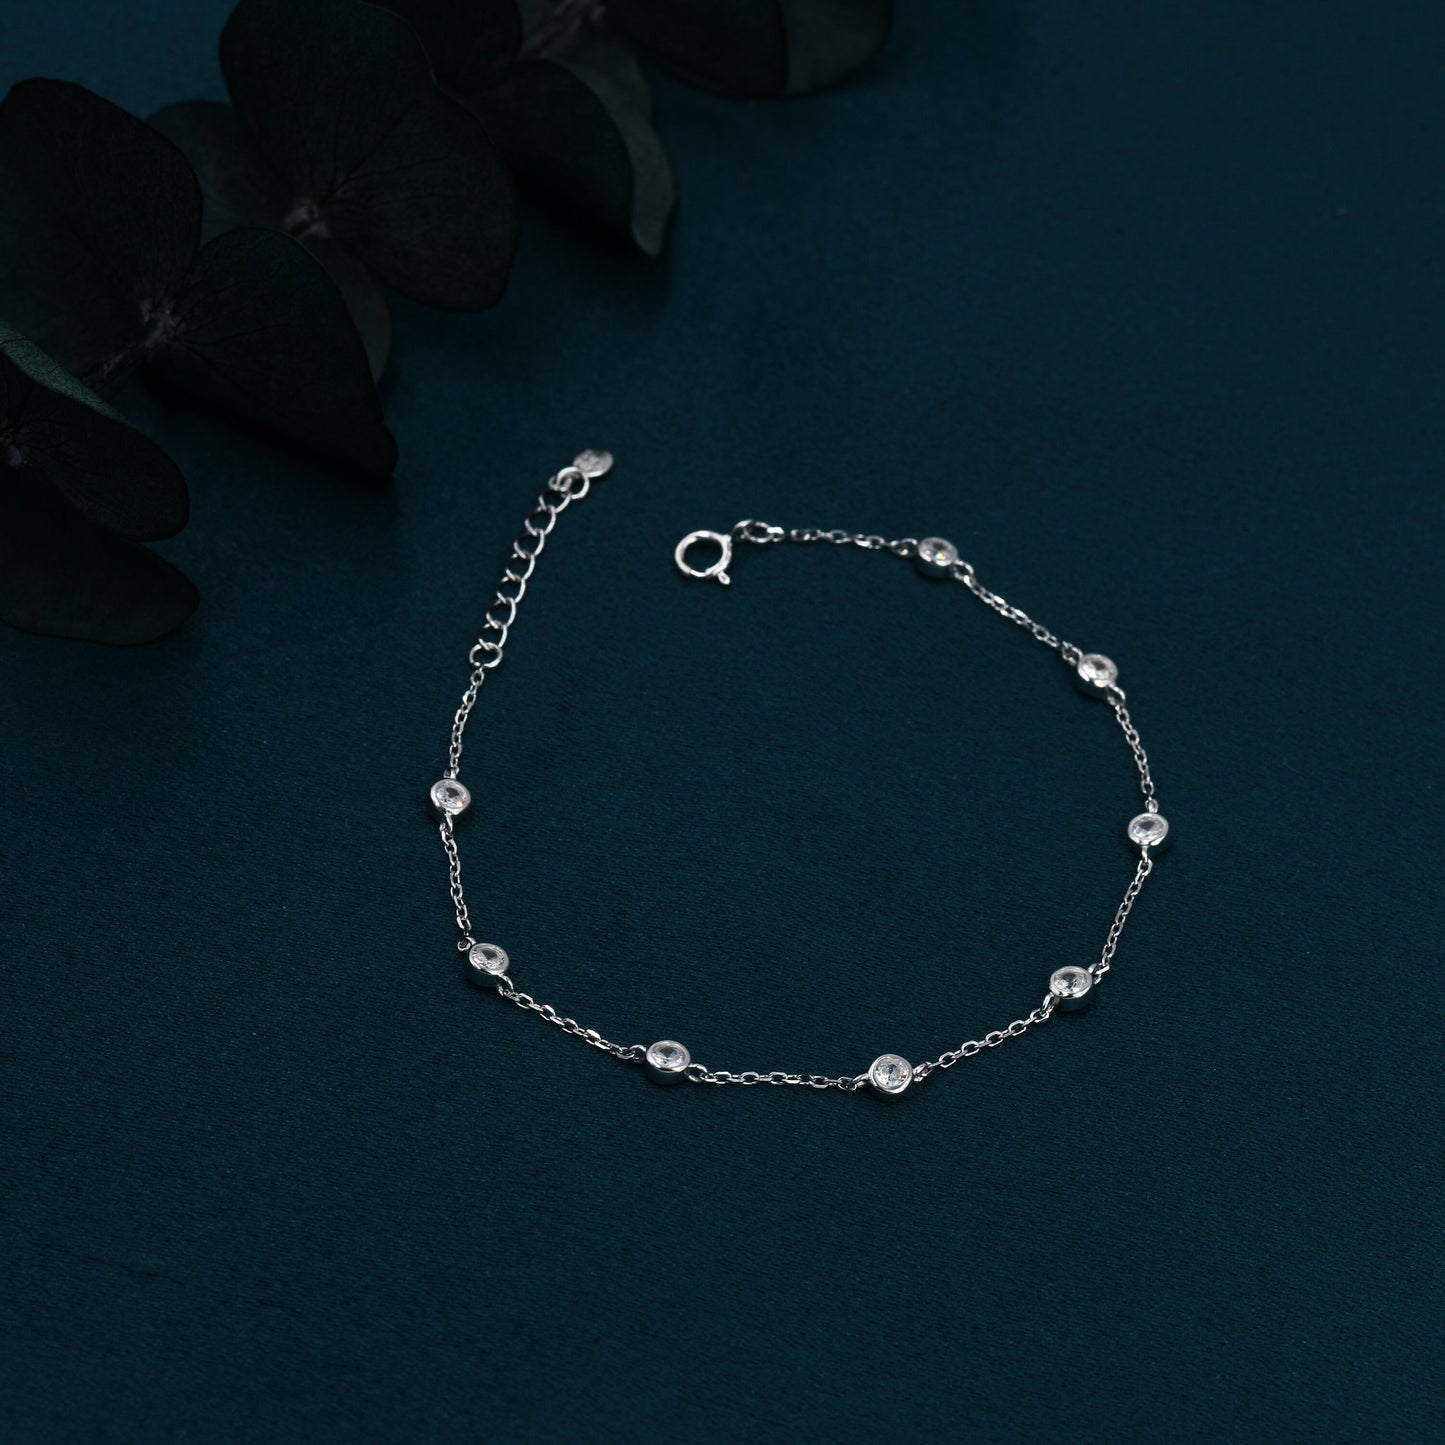 CZ Floating Bracelet or Anklet in Sterling Silver, Silver or Gold, Satellite Crystal Bracelet or Anklet, Solid Silver Motif Bracelet